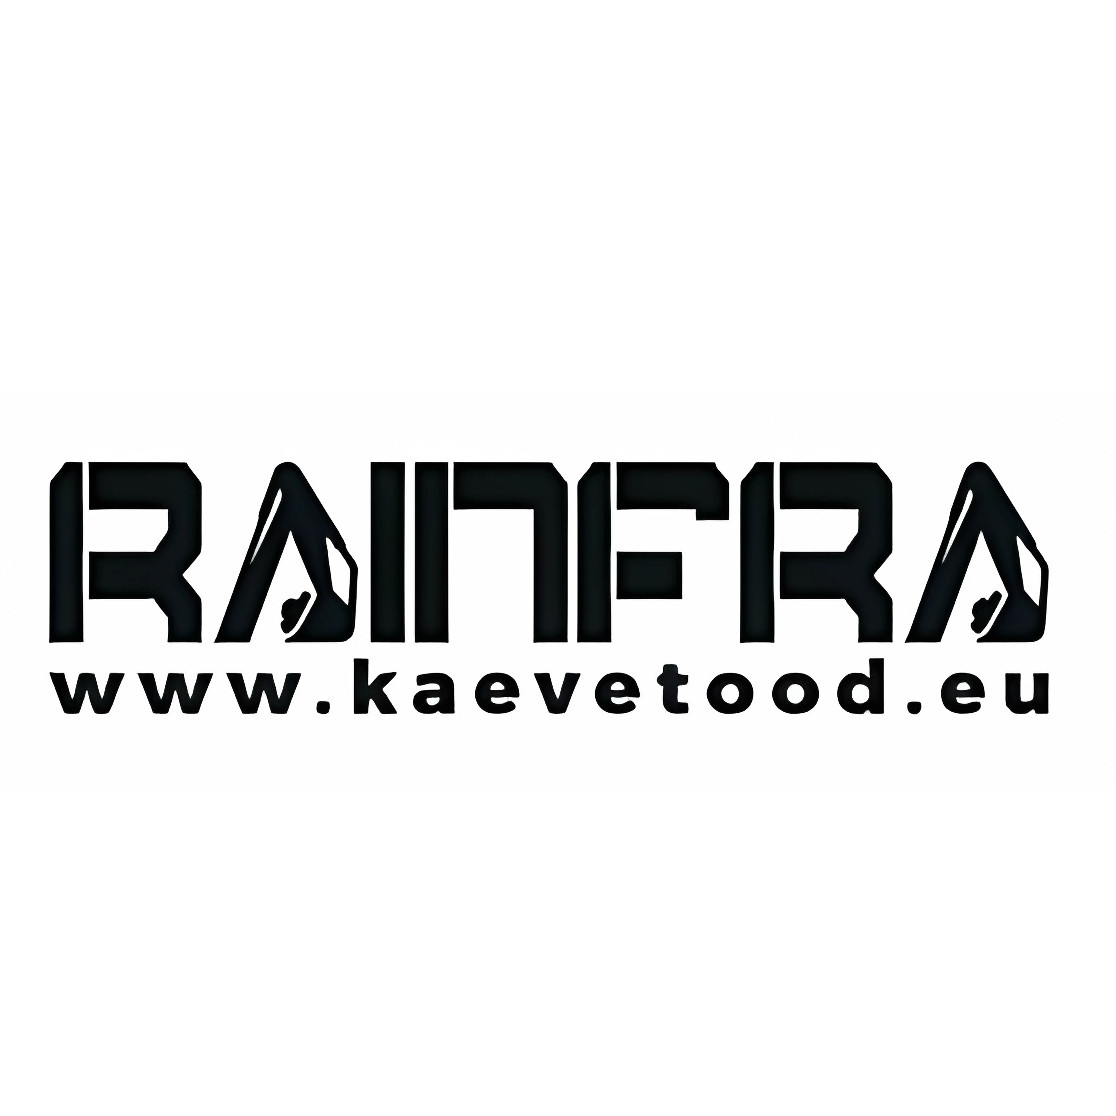 RAINFRA OÜ logo